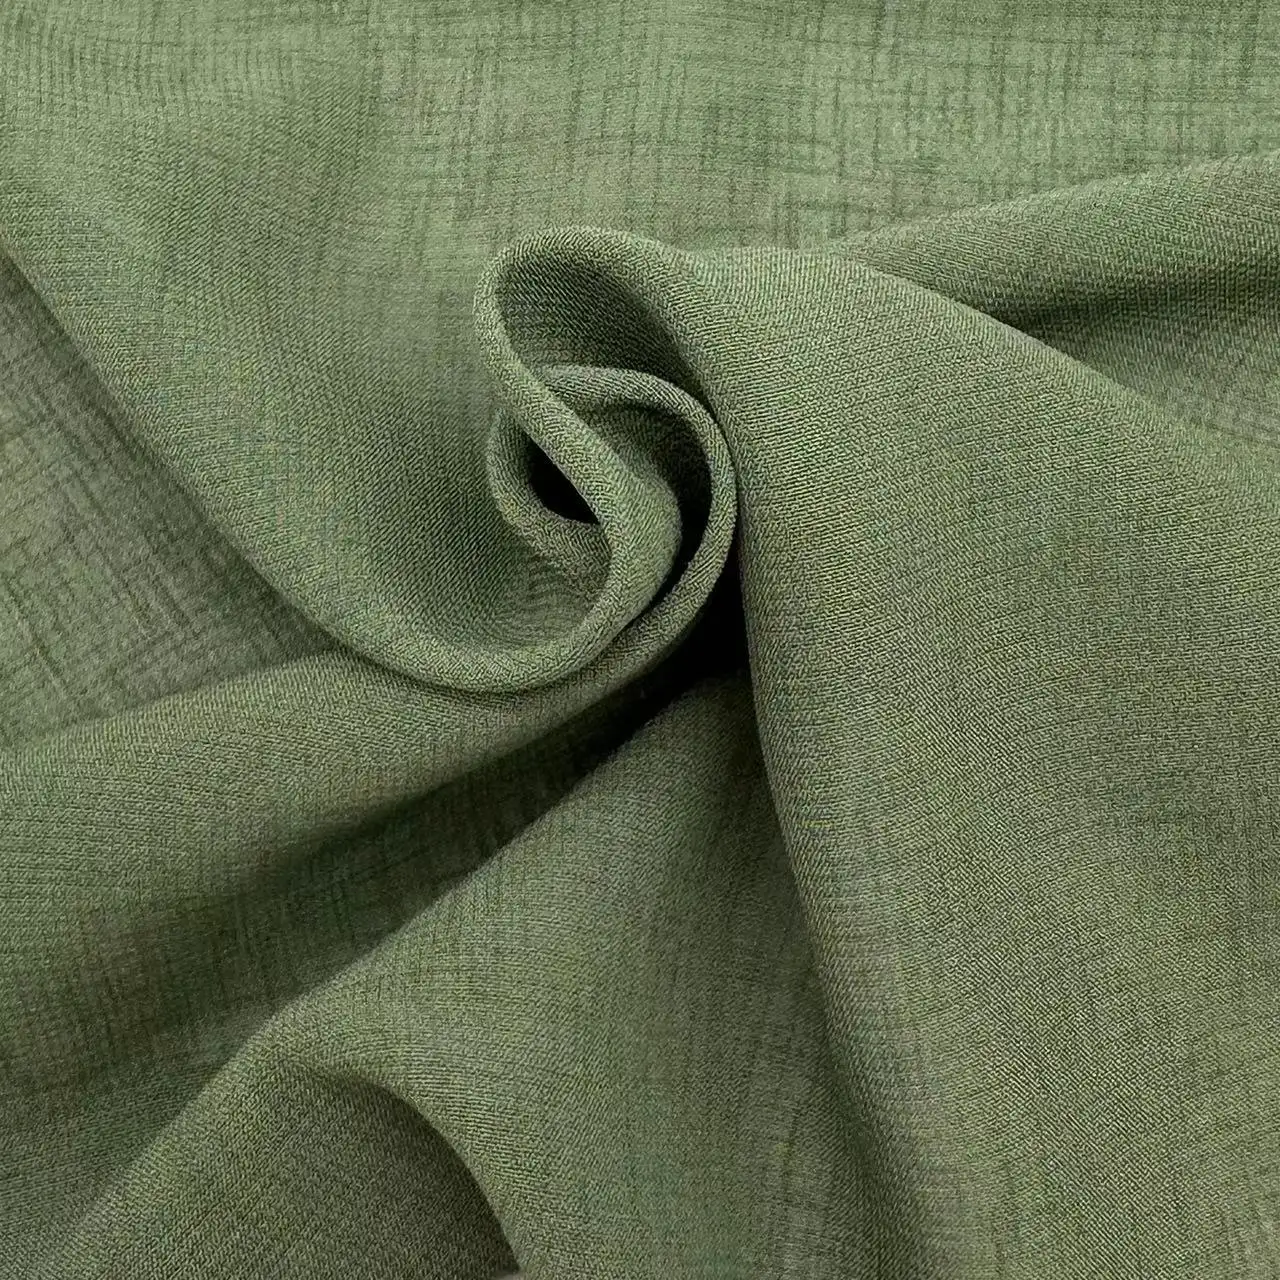 100% Polyester şifon kumaş sırf şifon tüm renkler için özel tasarım taklit ipek kumaş kadın giyim/eşarp